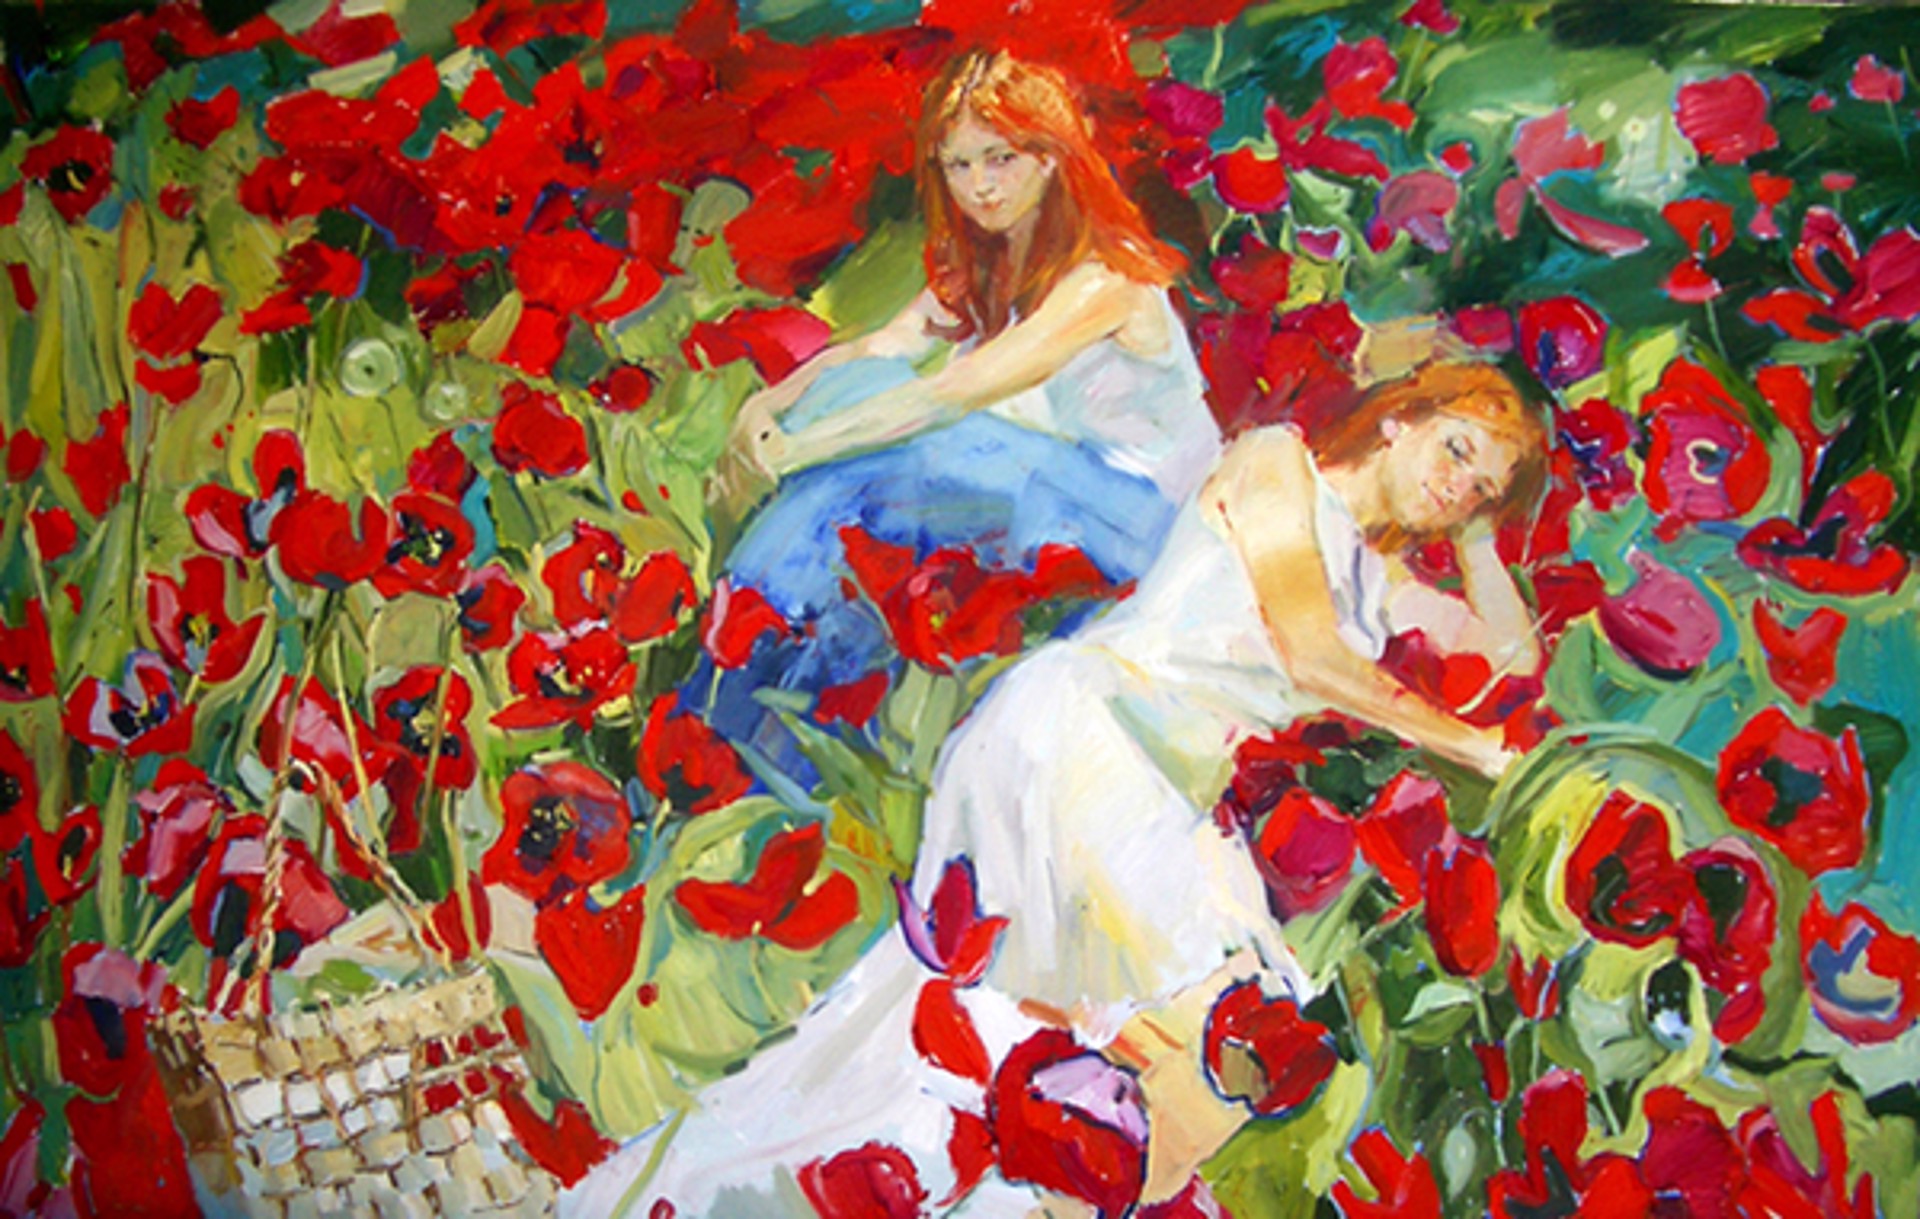 Among the Flowers by Renat Ramazanov